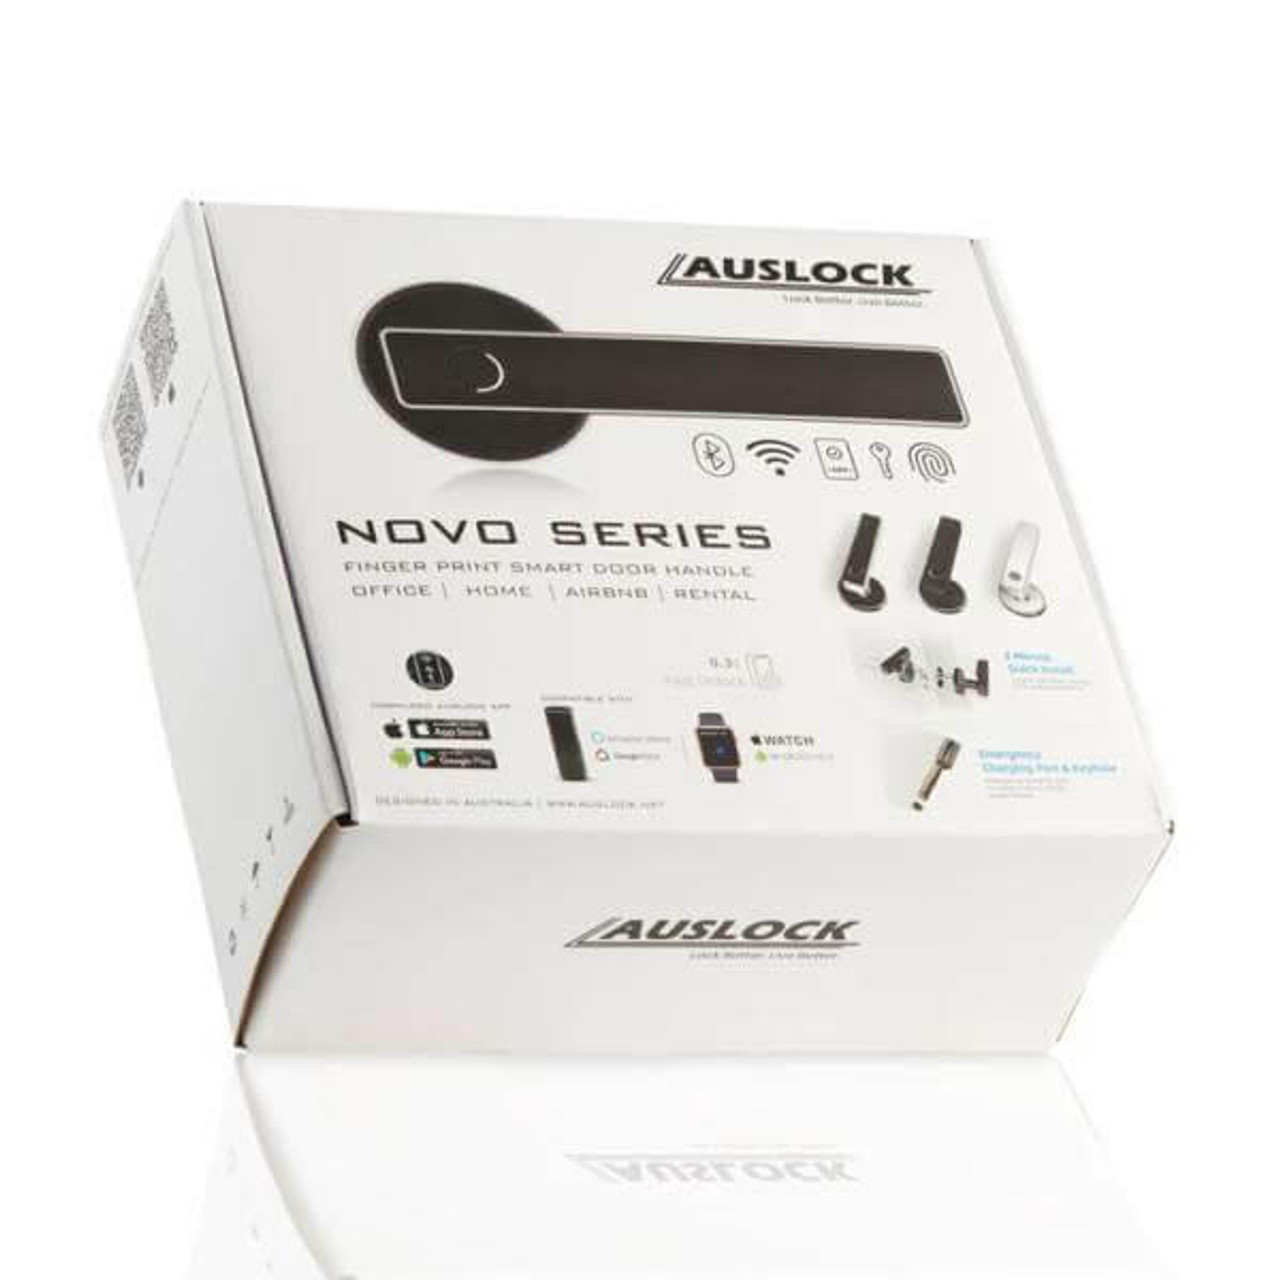  Auslock Novo Series Smart Door Handle - N20 